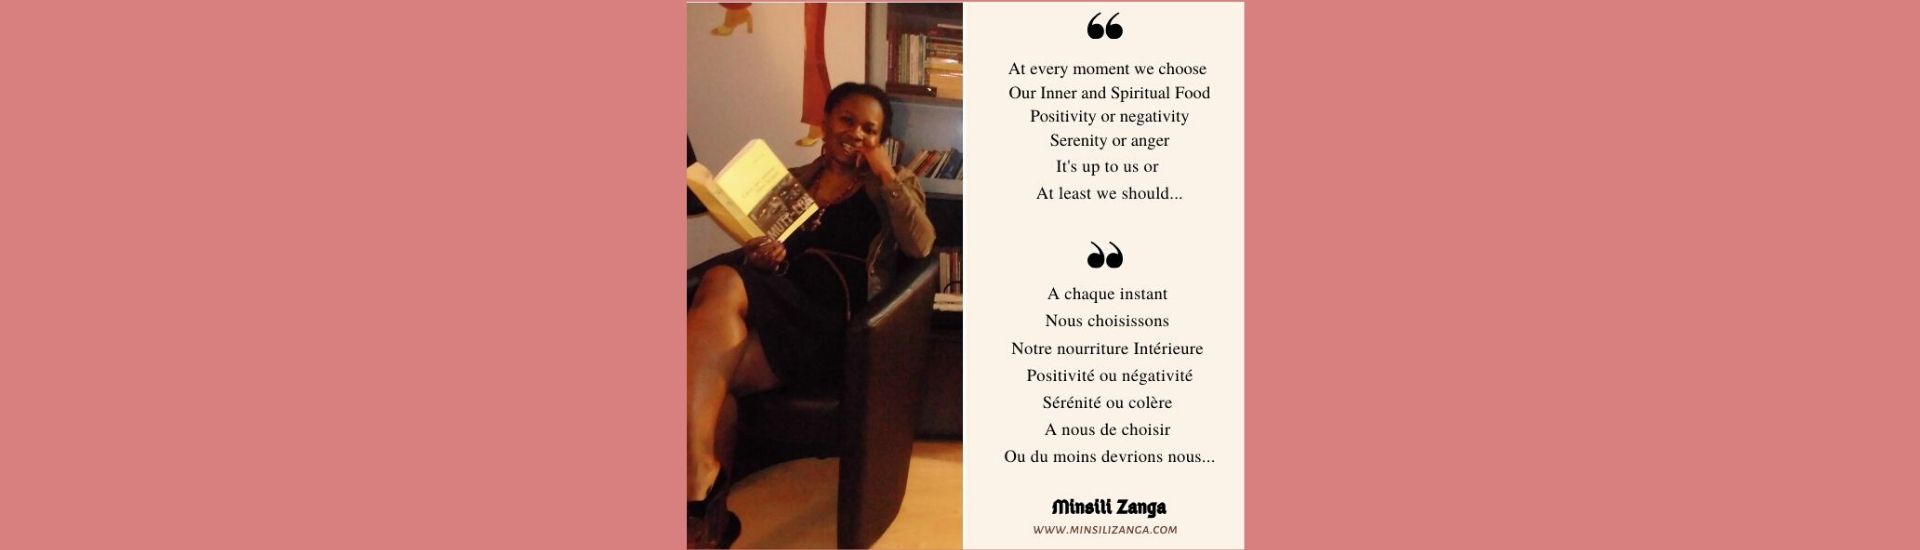 Réflexion sur la tranquillité - Minsili ZANGA